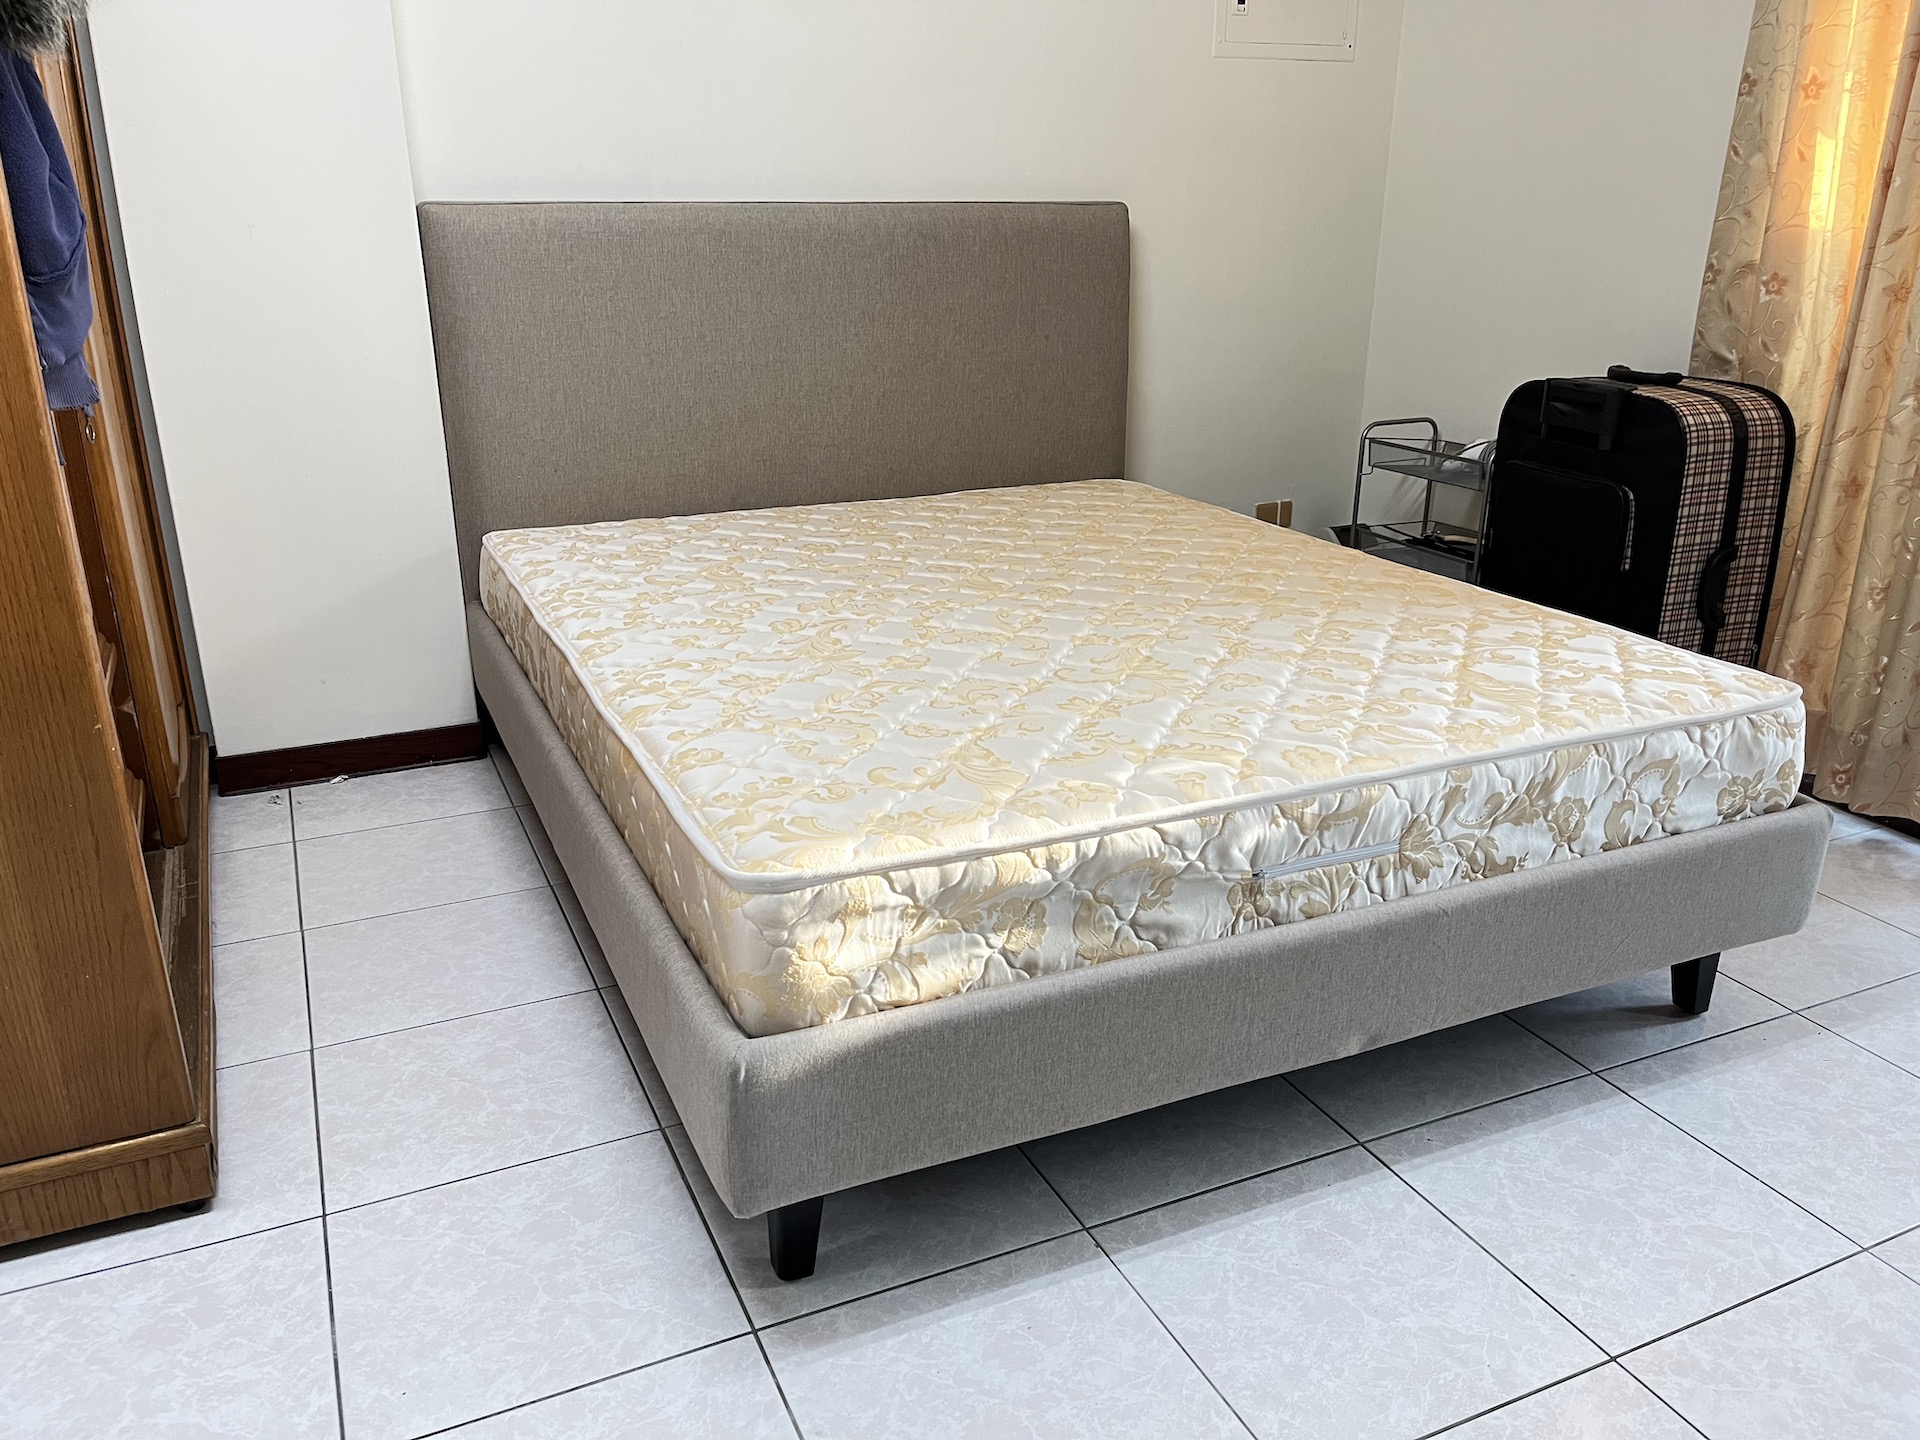 【客戶案例分享】台中東區雙人床組訂製